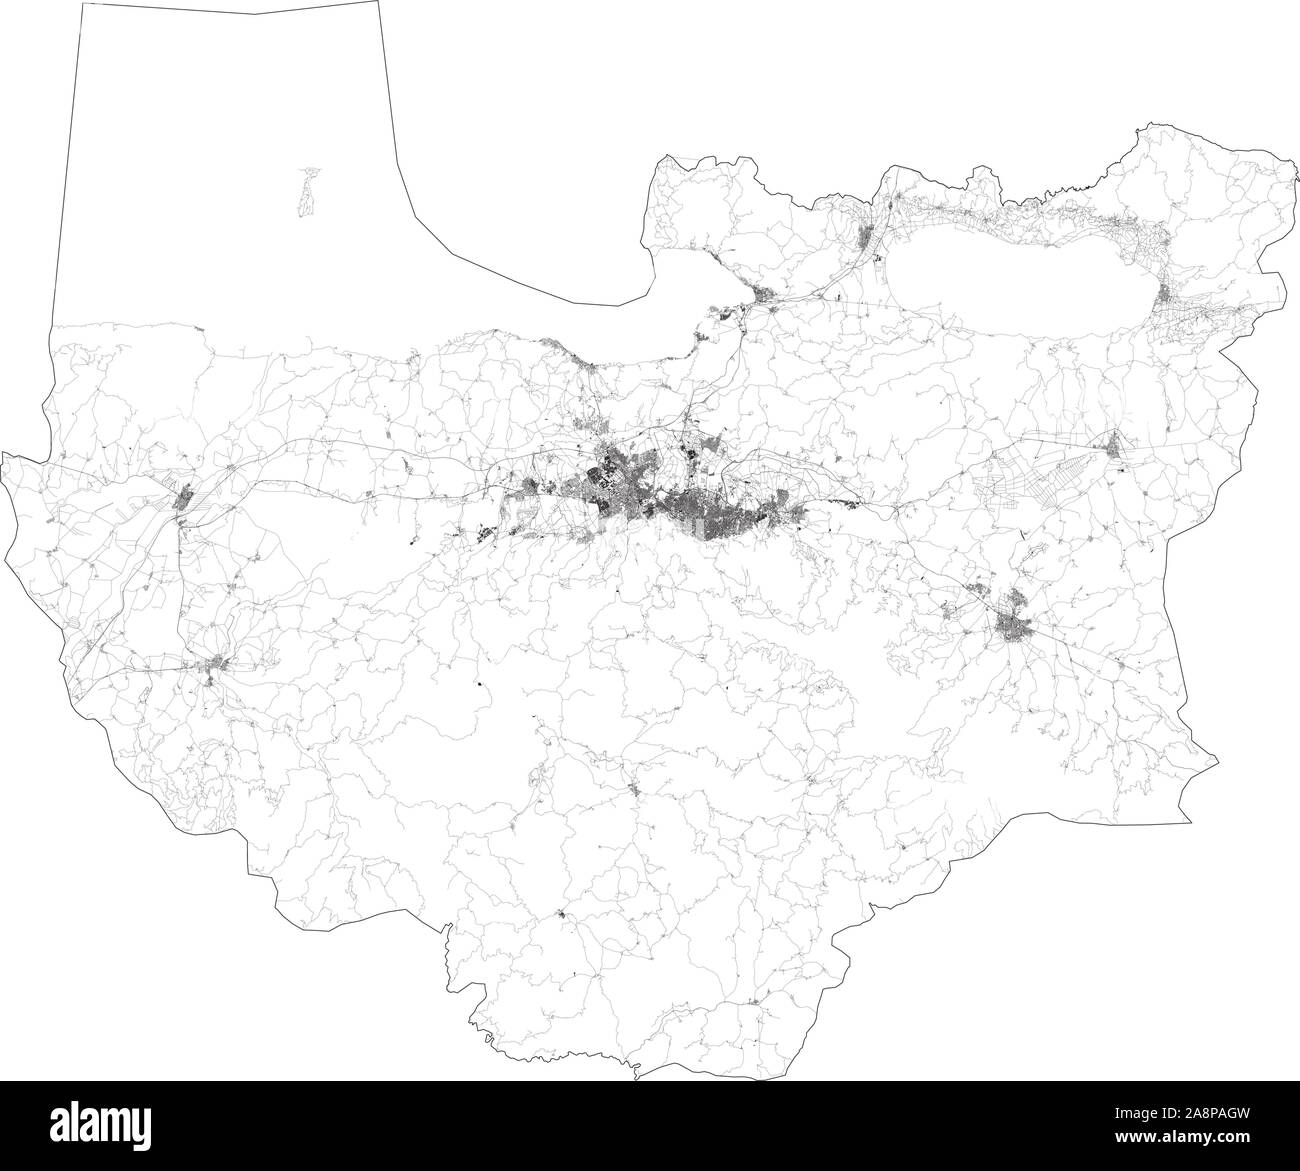 Satelliten Karte von Bursa und Gebäuden, die Türkei. Karte Straßen, Straßen und Autobahnen, Flüsse. Verkehrsmittel Karte Stock Vektor